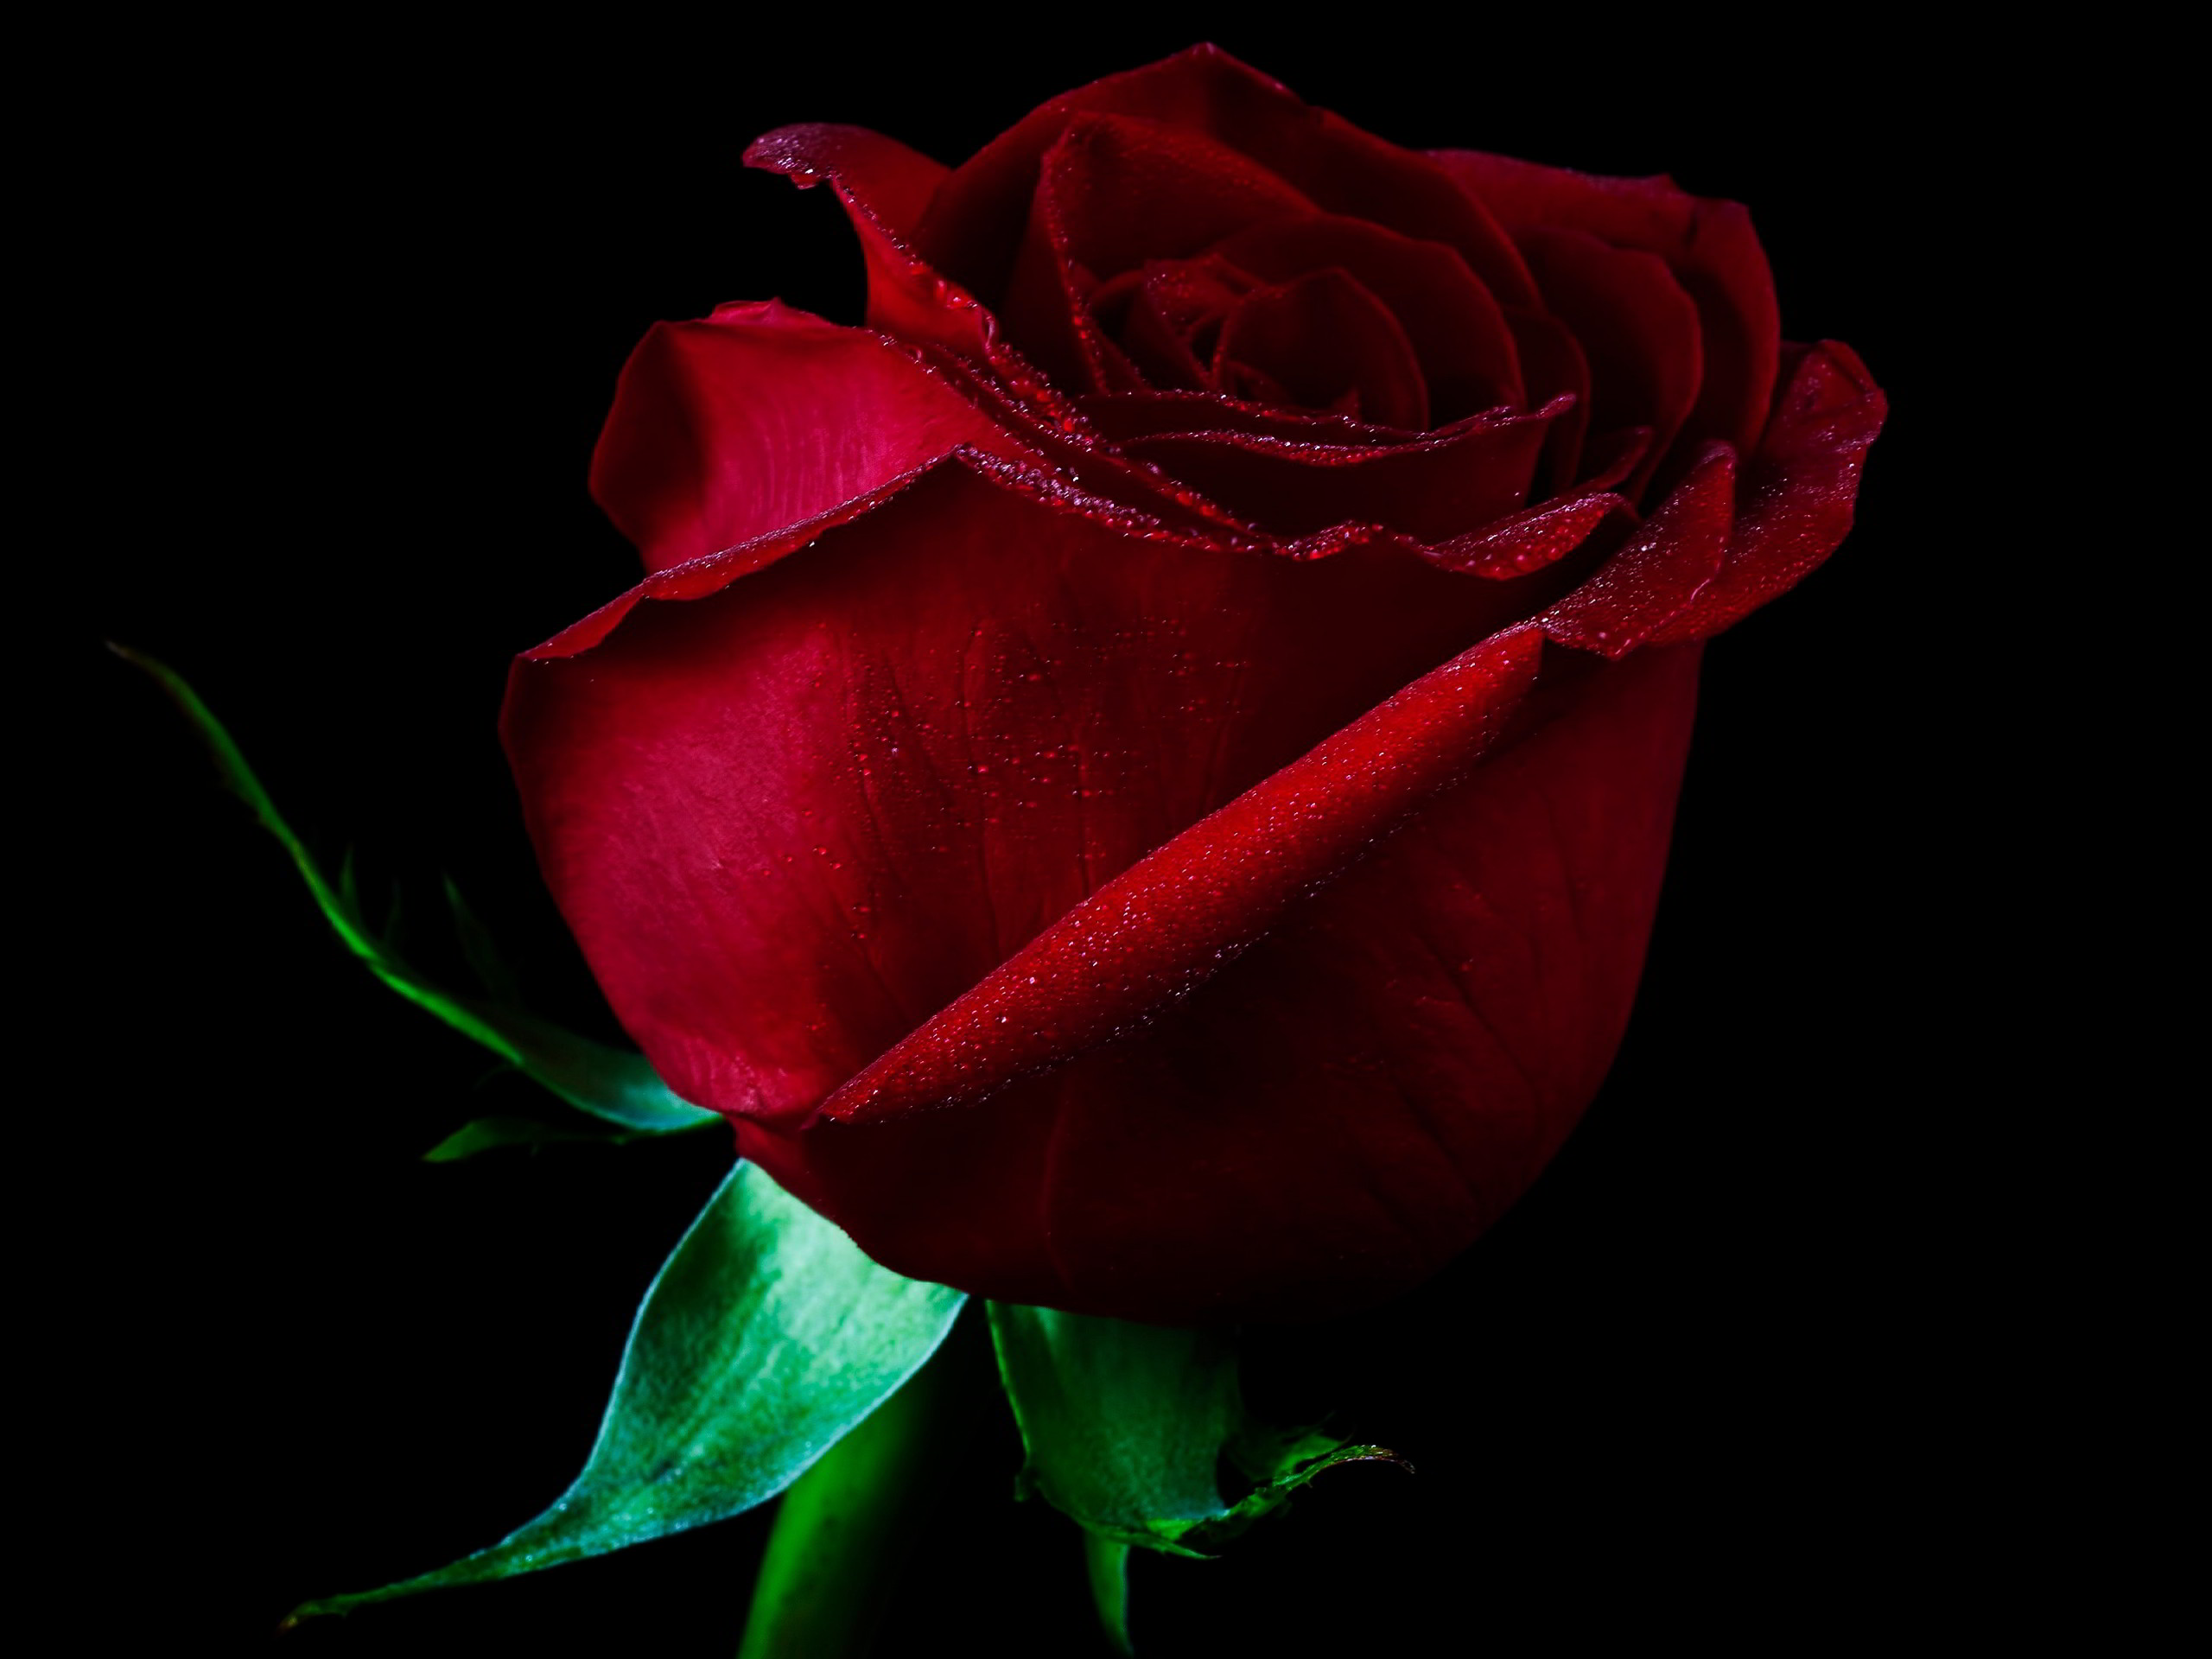 100 Hình nền ảnh hoa hồng đẹp full HD cho máy tính điện thoại